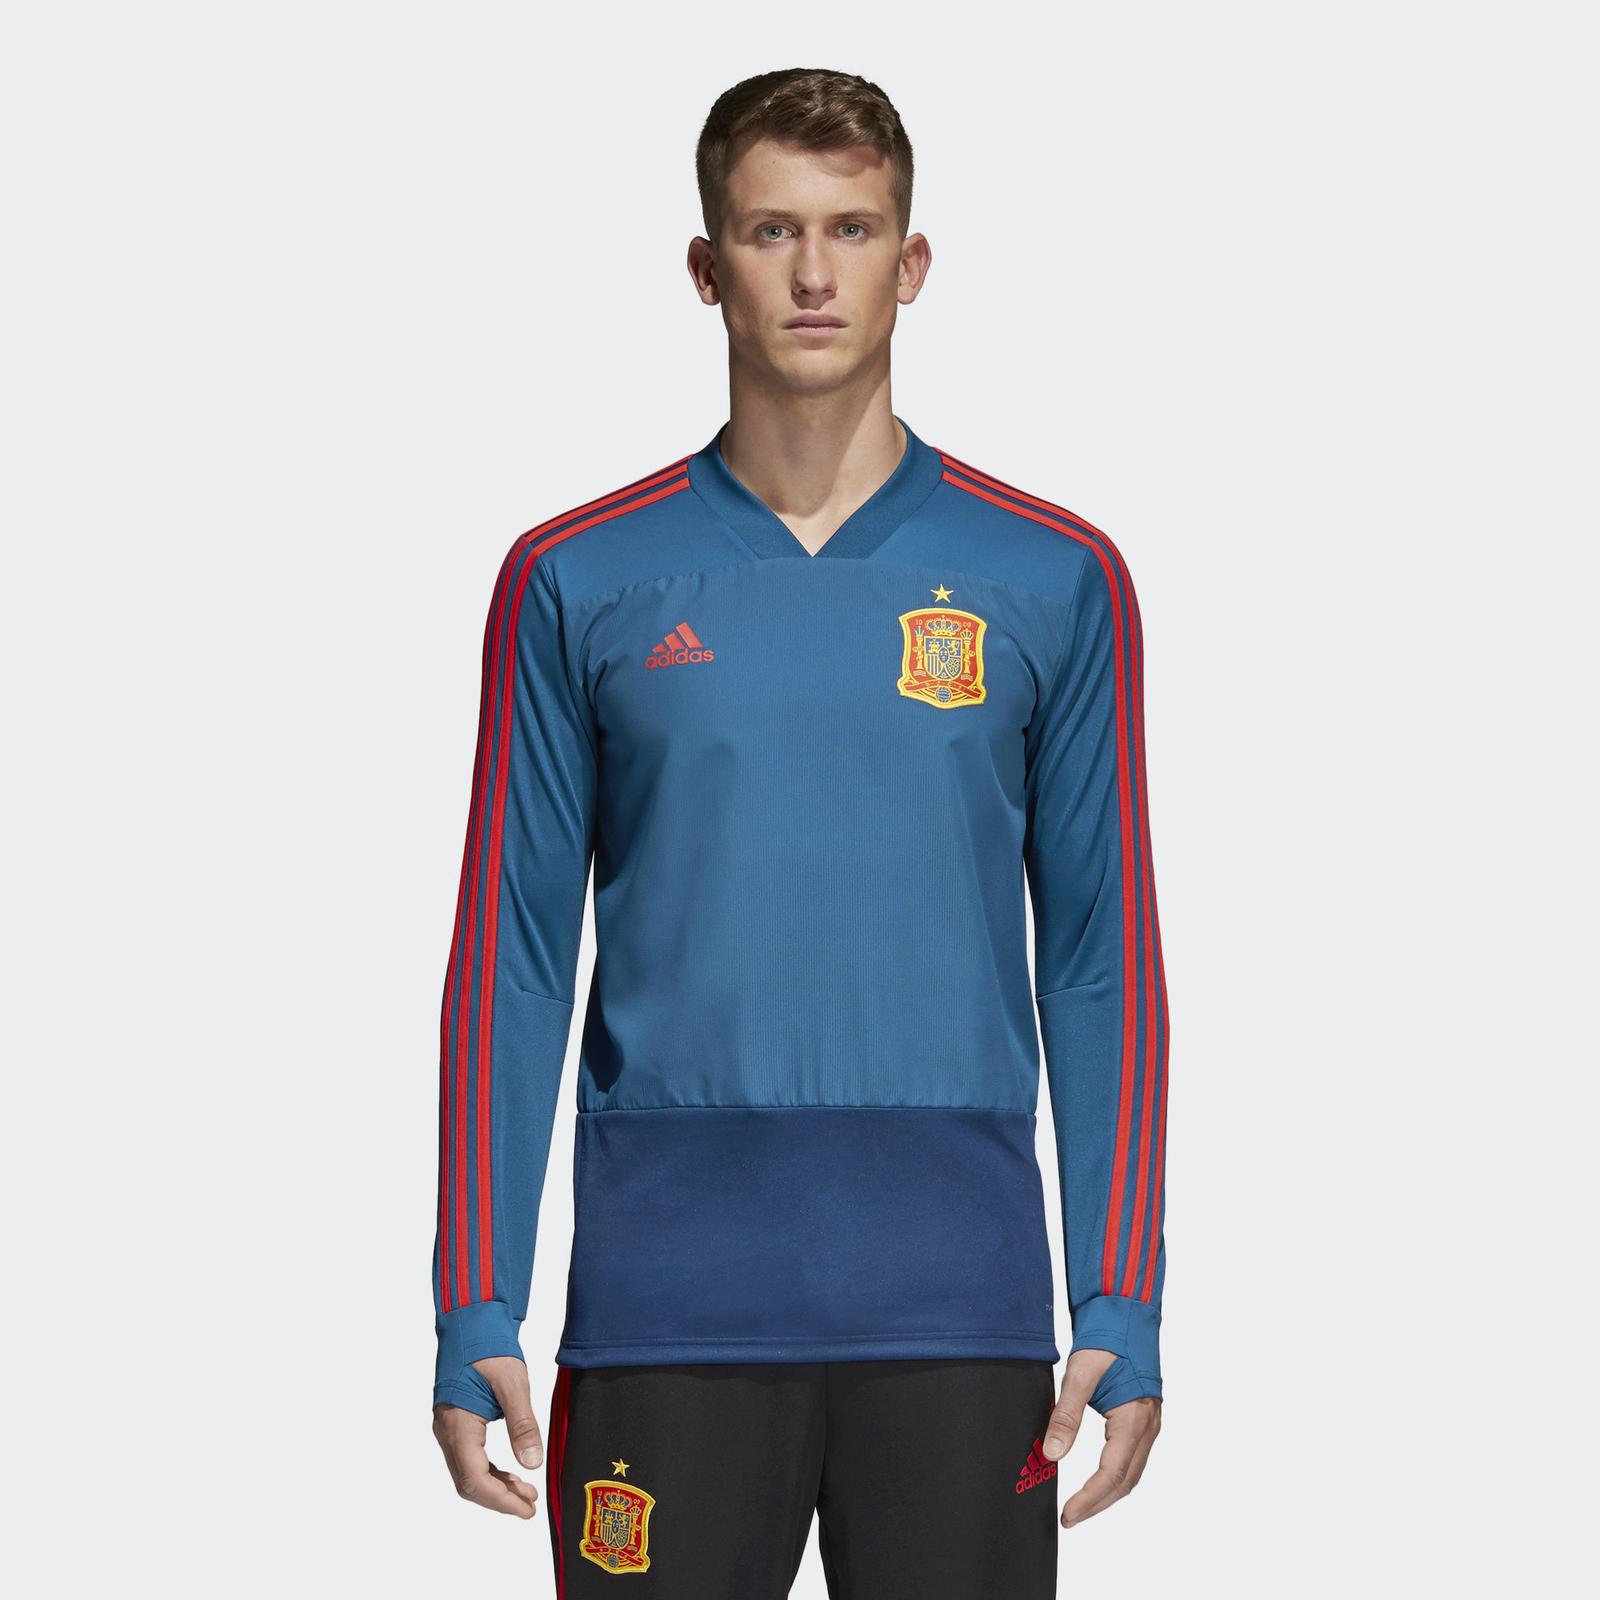 Adidas Spain 2018 World Cup Training Kit & ZNE Jacket Revealed - Footy ...